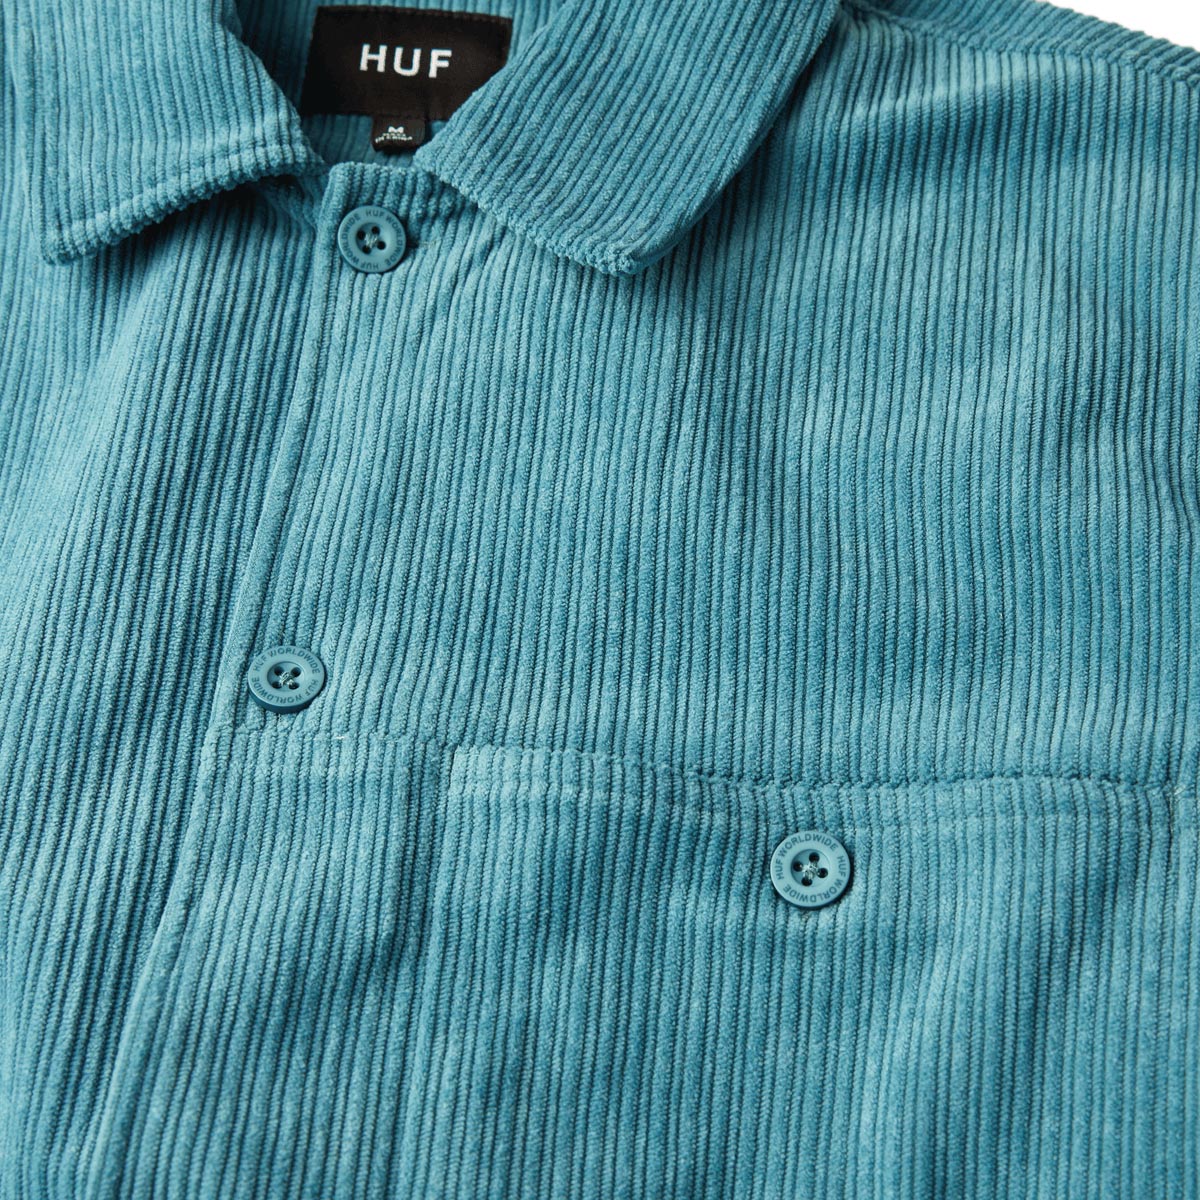 HUF Co Corduroy Over Shirt - Dark Teal image 4